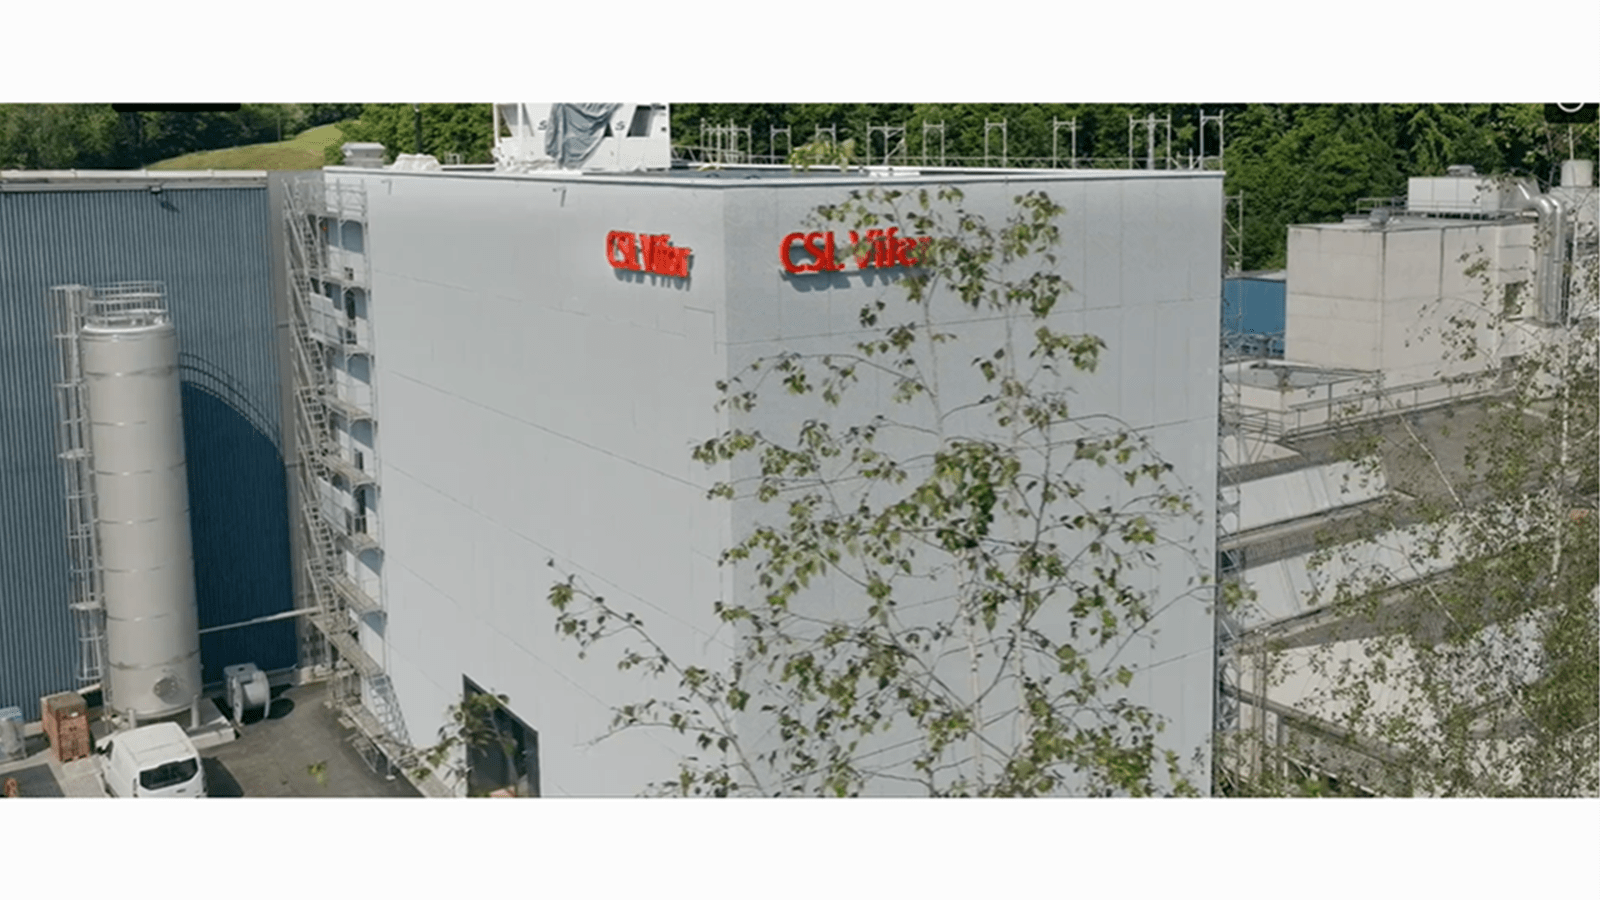 CSL Vifor's facility in St. Gallen, Switzerland